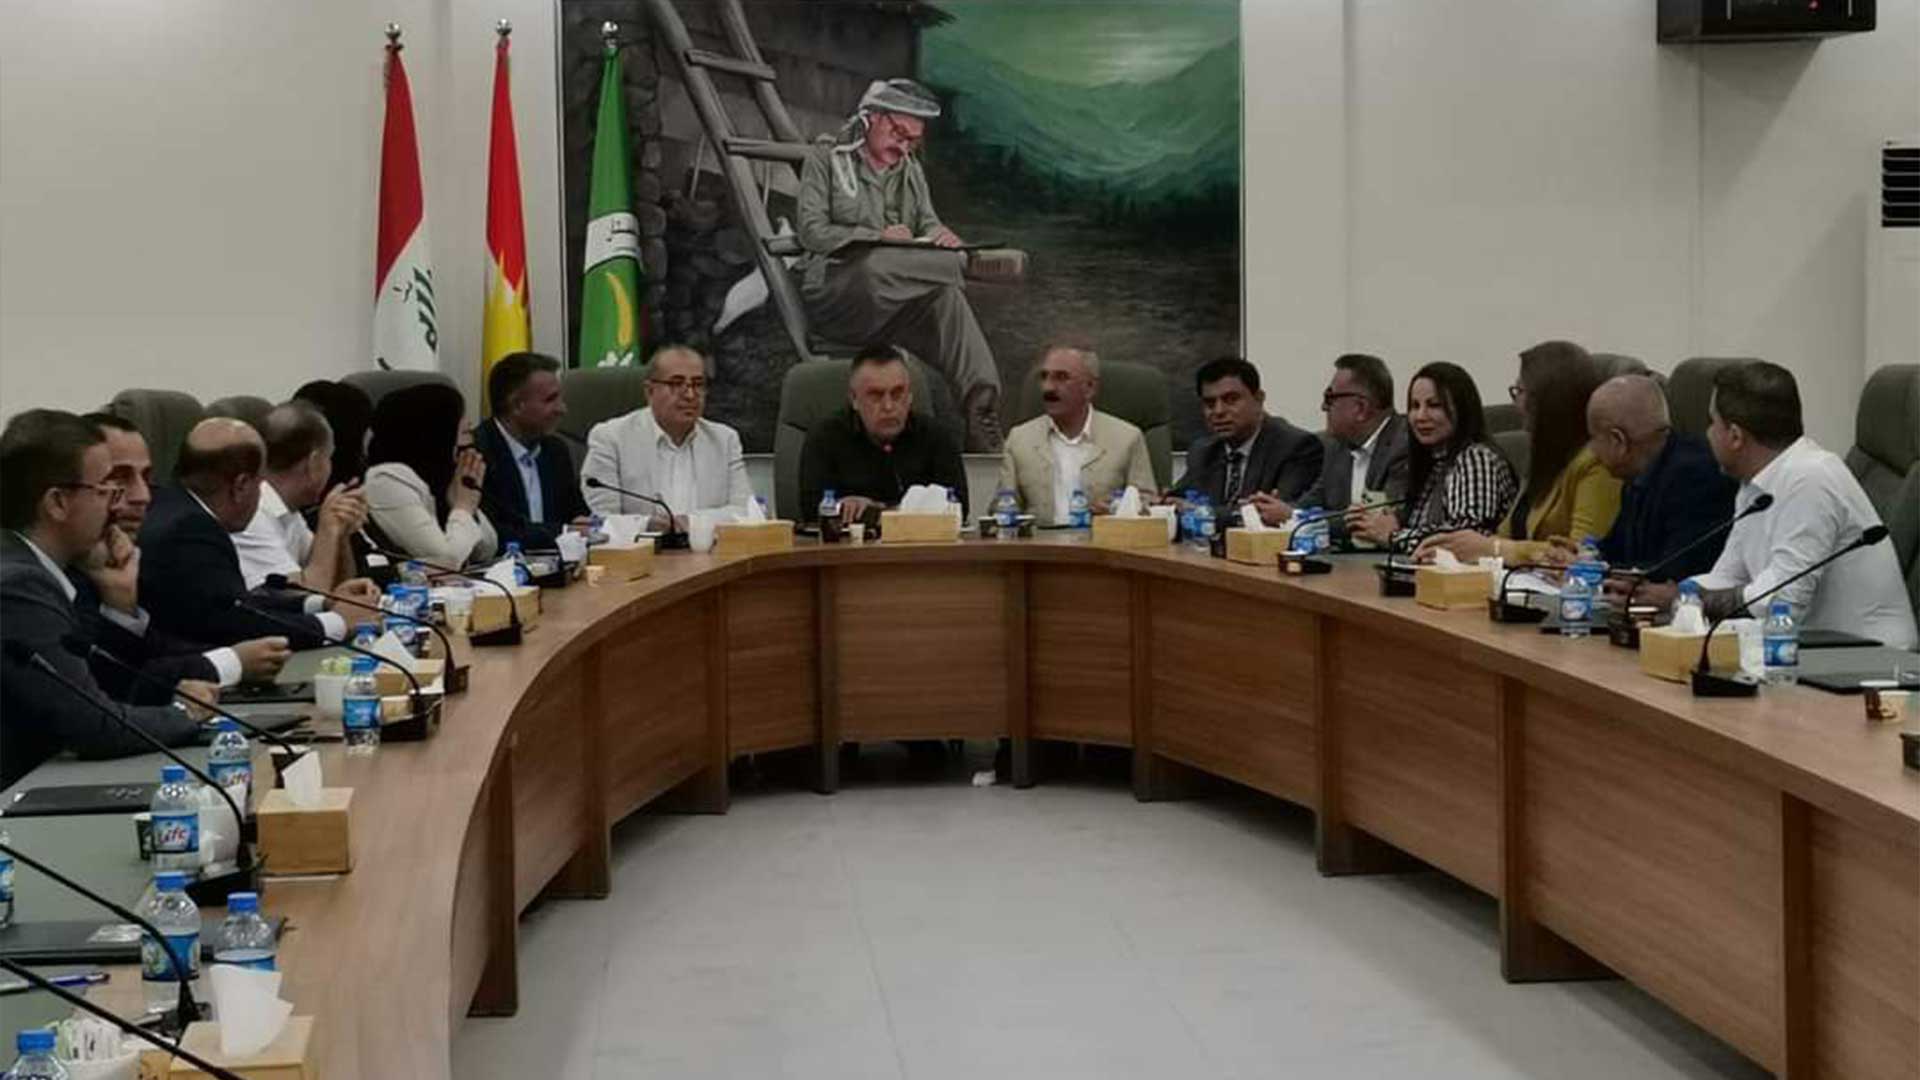  اجتماع مجلس قيادة كركوك- صلاح الدين للاتحاد الوطني الكوردستاني  